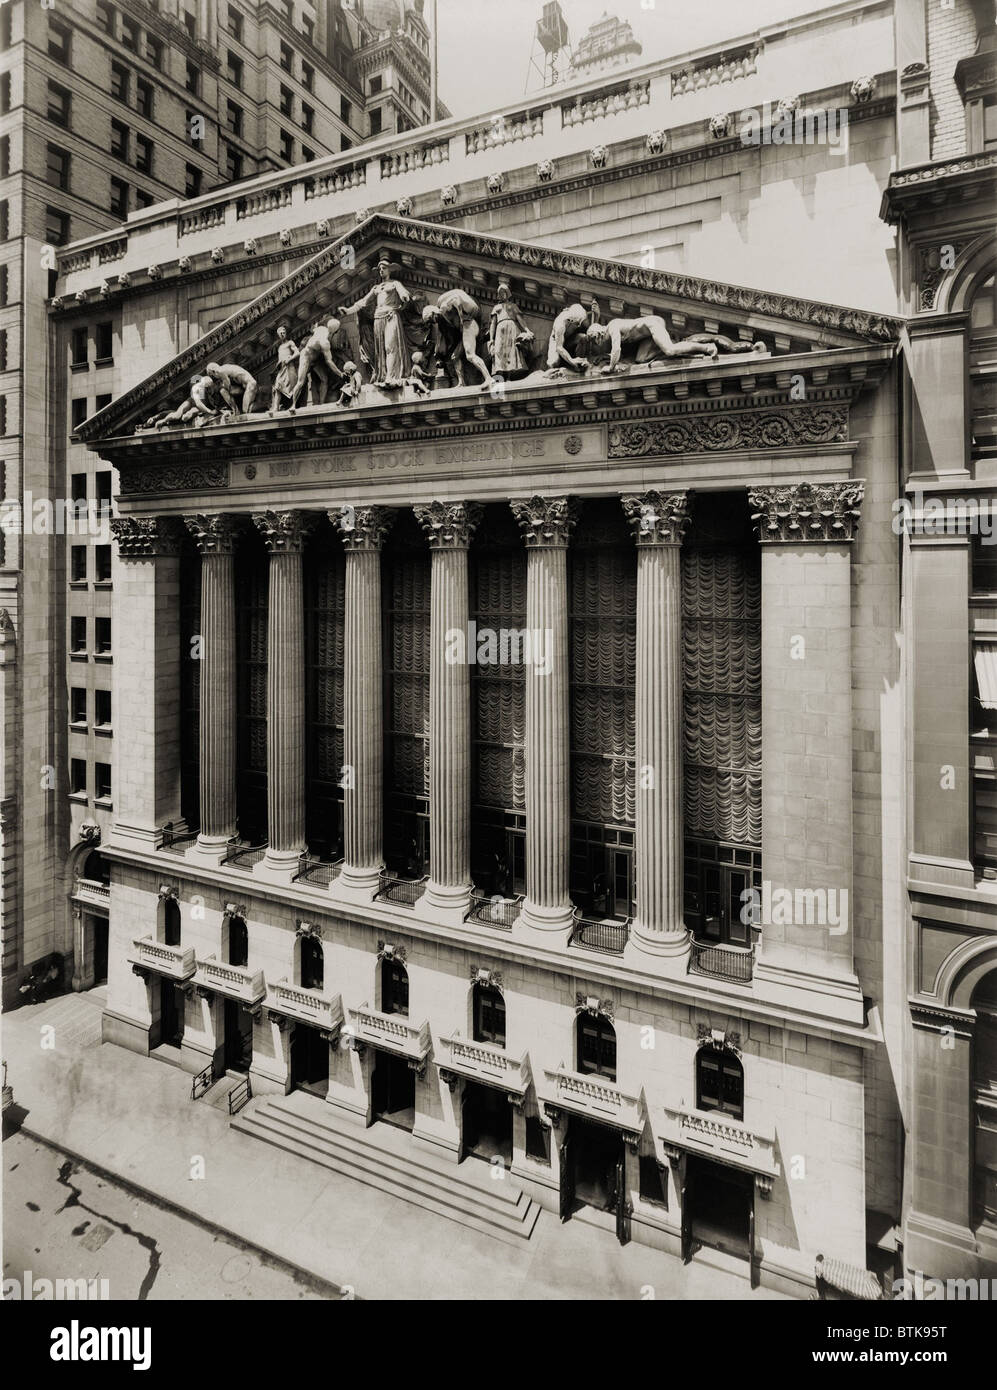 Bolsa de Valores de Nueva York durante la depresión económica de 1907-08. El edificio de la dirección oficial fue de 18 Broad Street, ubicado Foto de stock